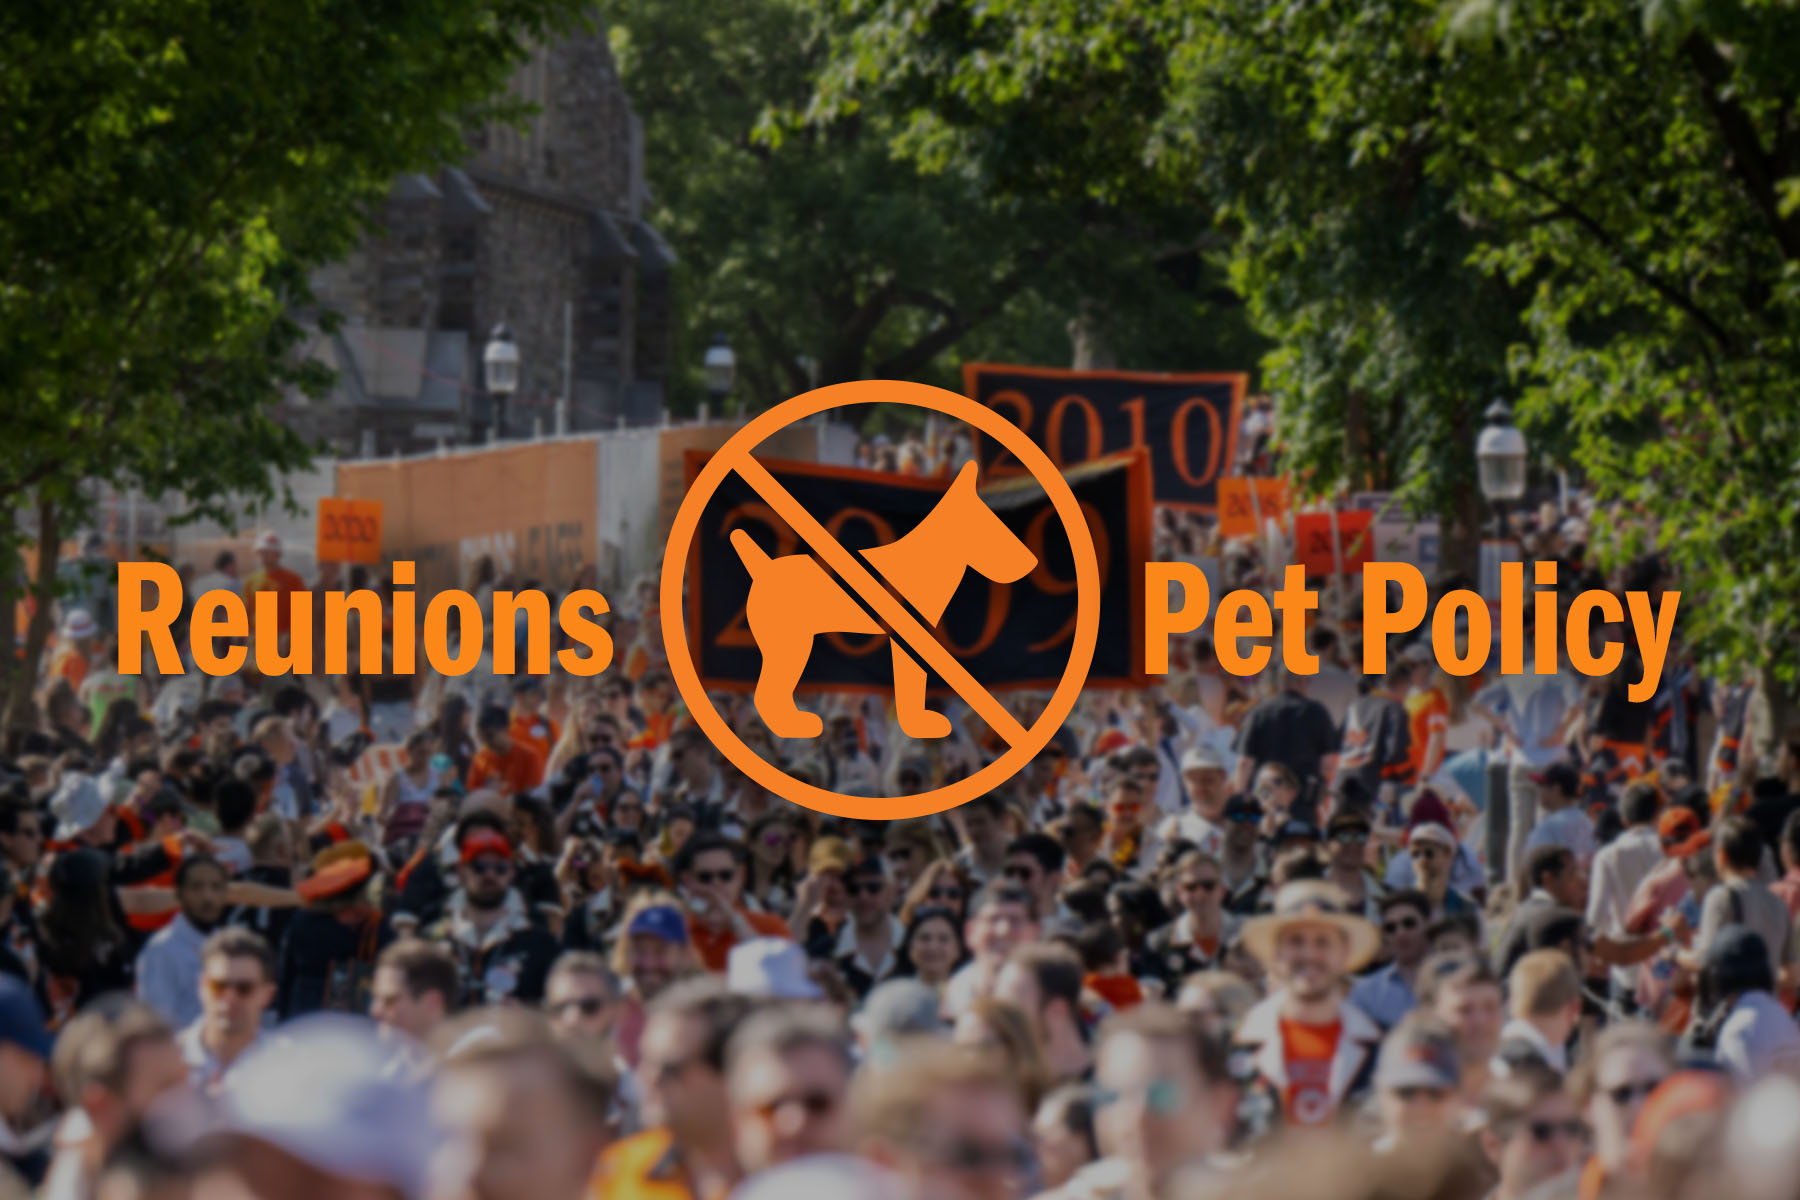 No Pet Policy